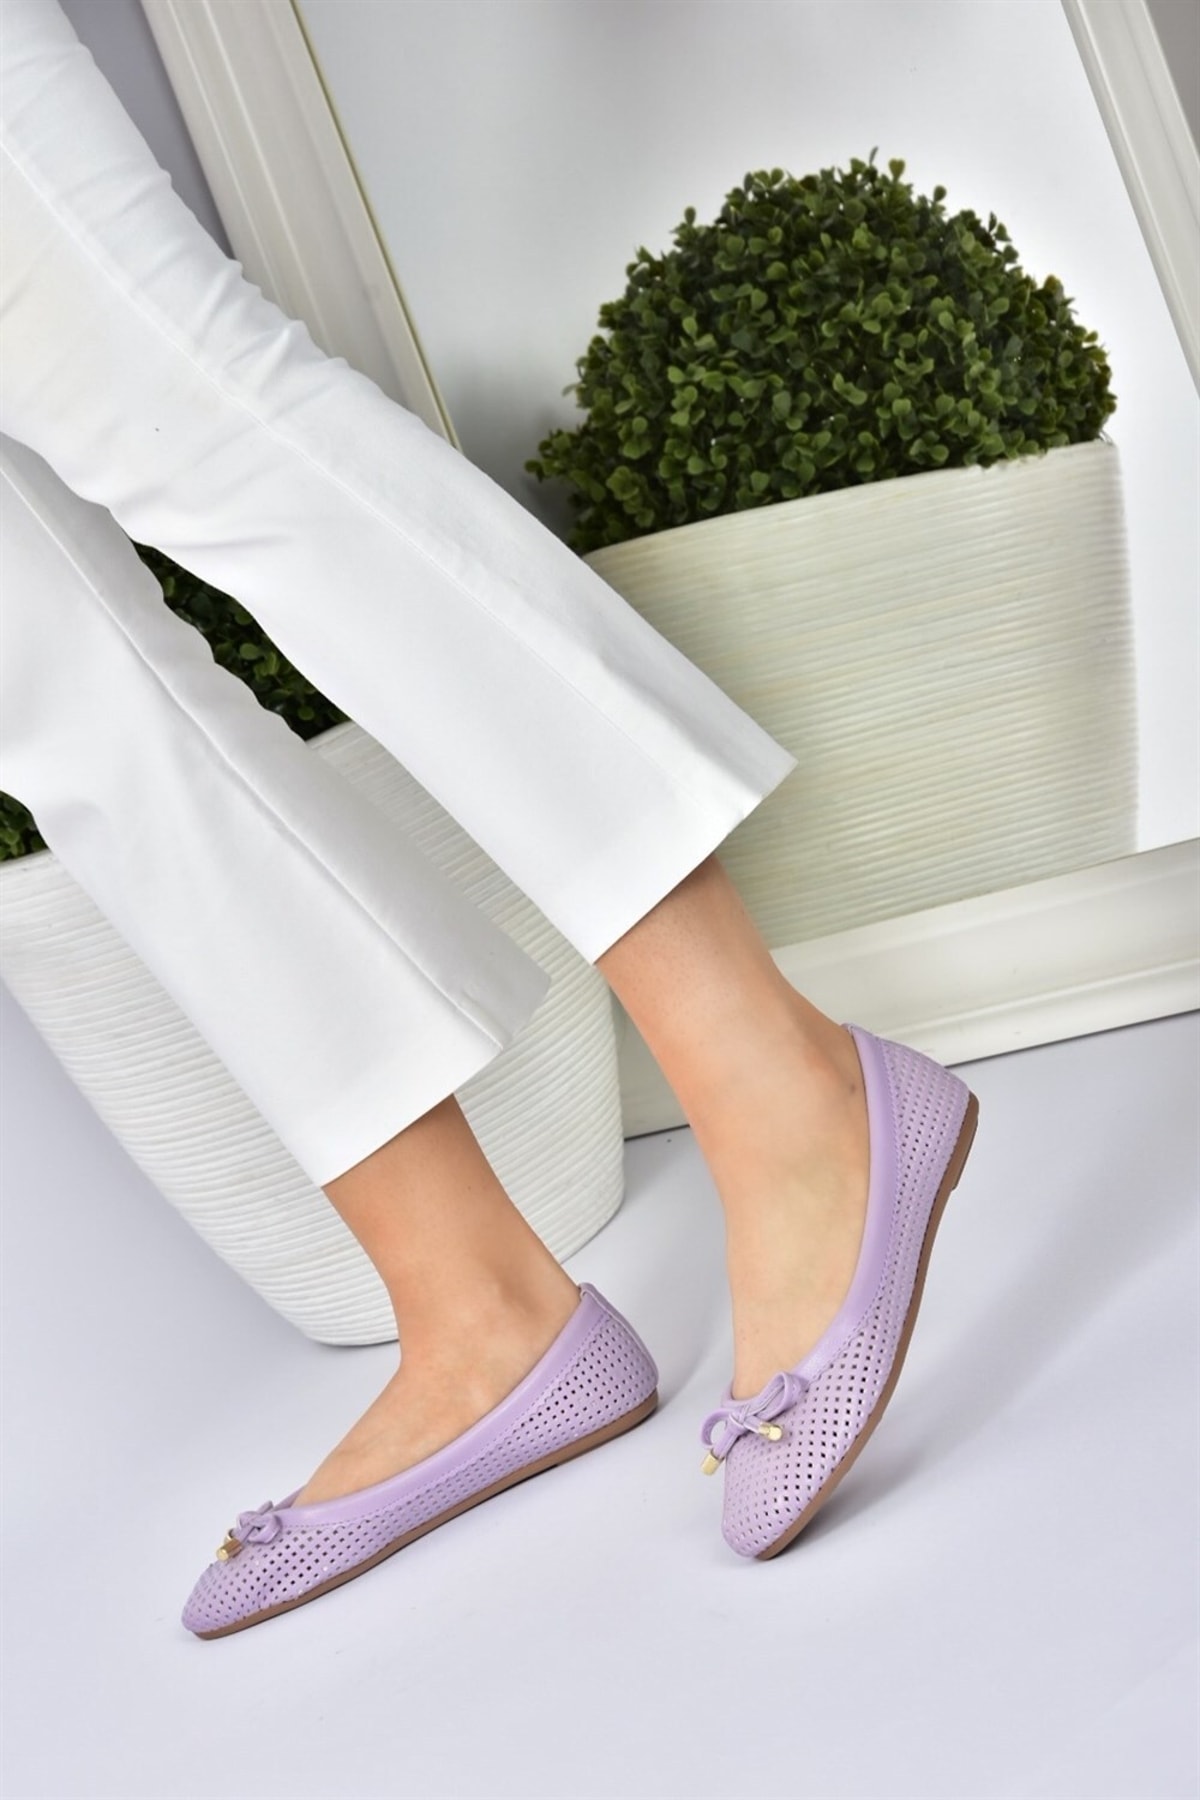 Fox Shoes Lilac Women's Daily Flat Flats